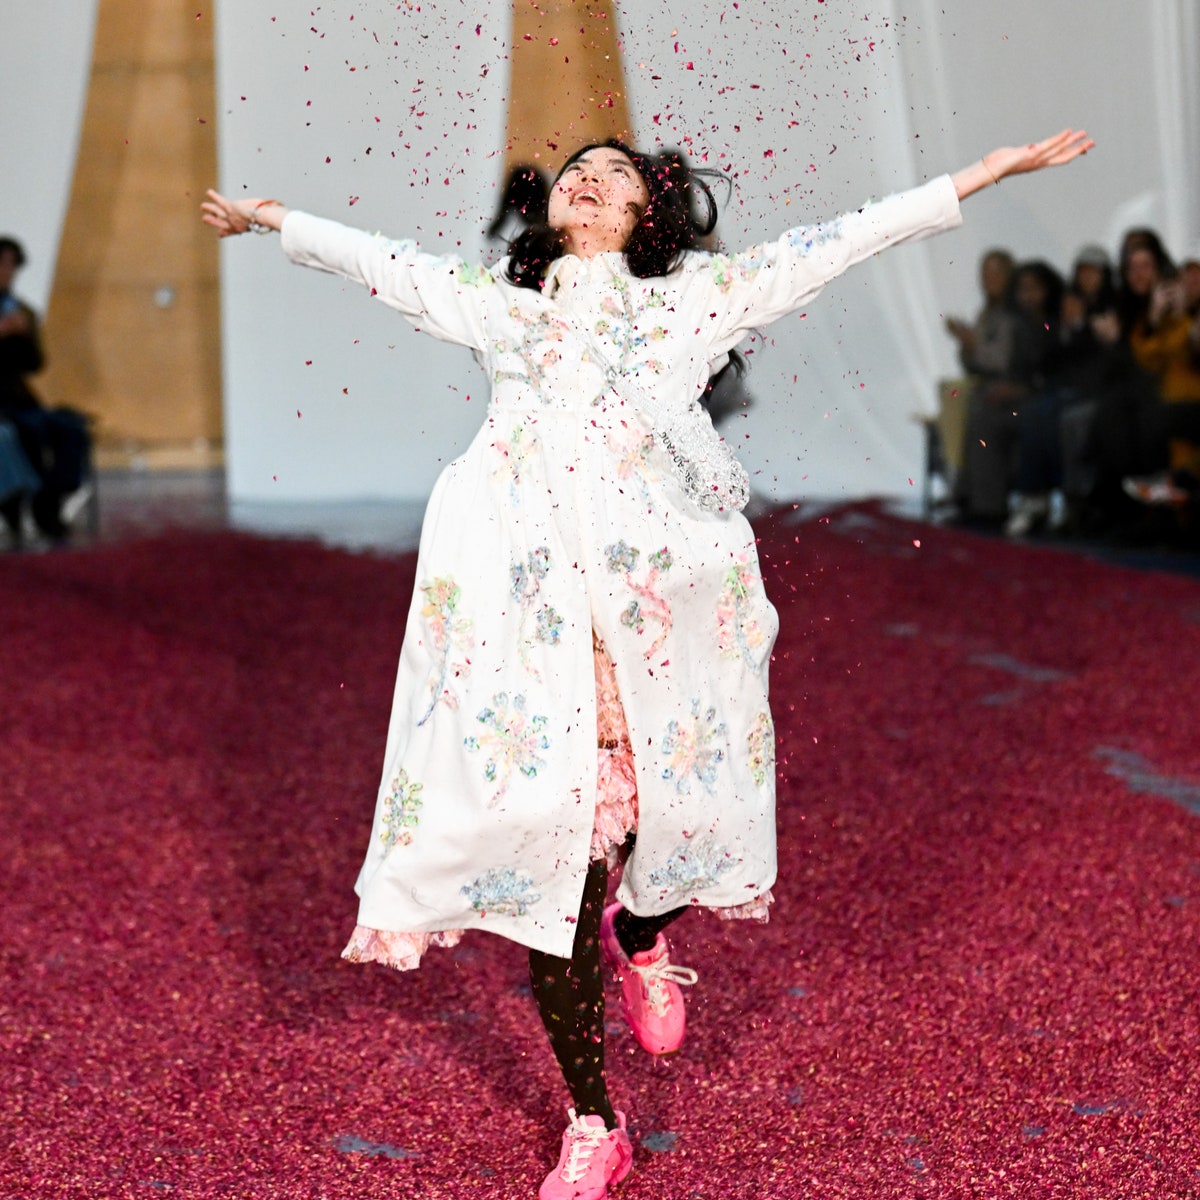 La bellezza gentile e il caos matematico di Susan Fang, che sfilerà alla prossima Milano Fashion Week con il supporto di Dolce&Gabbana